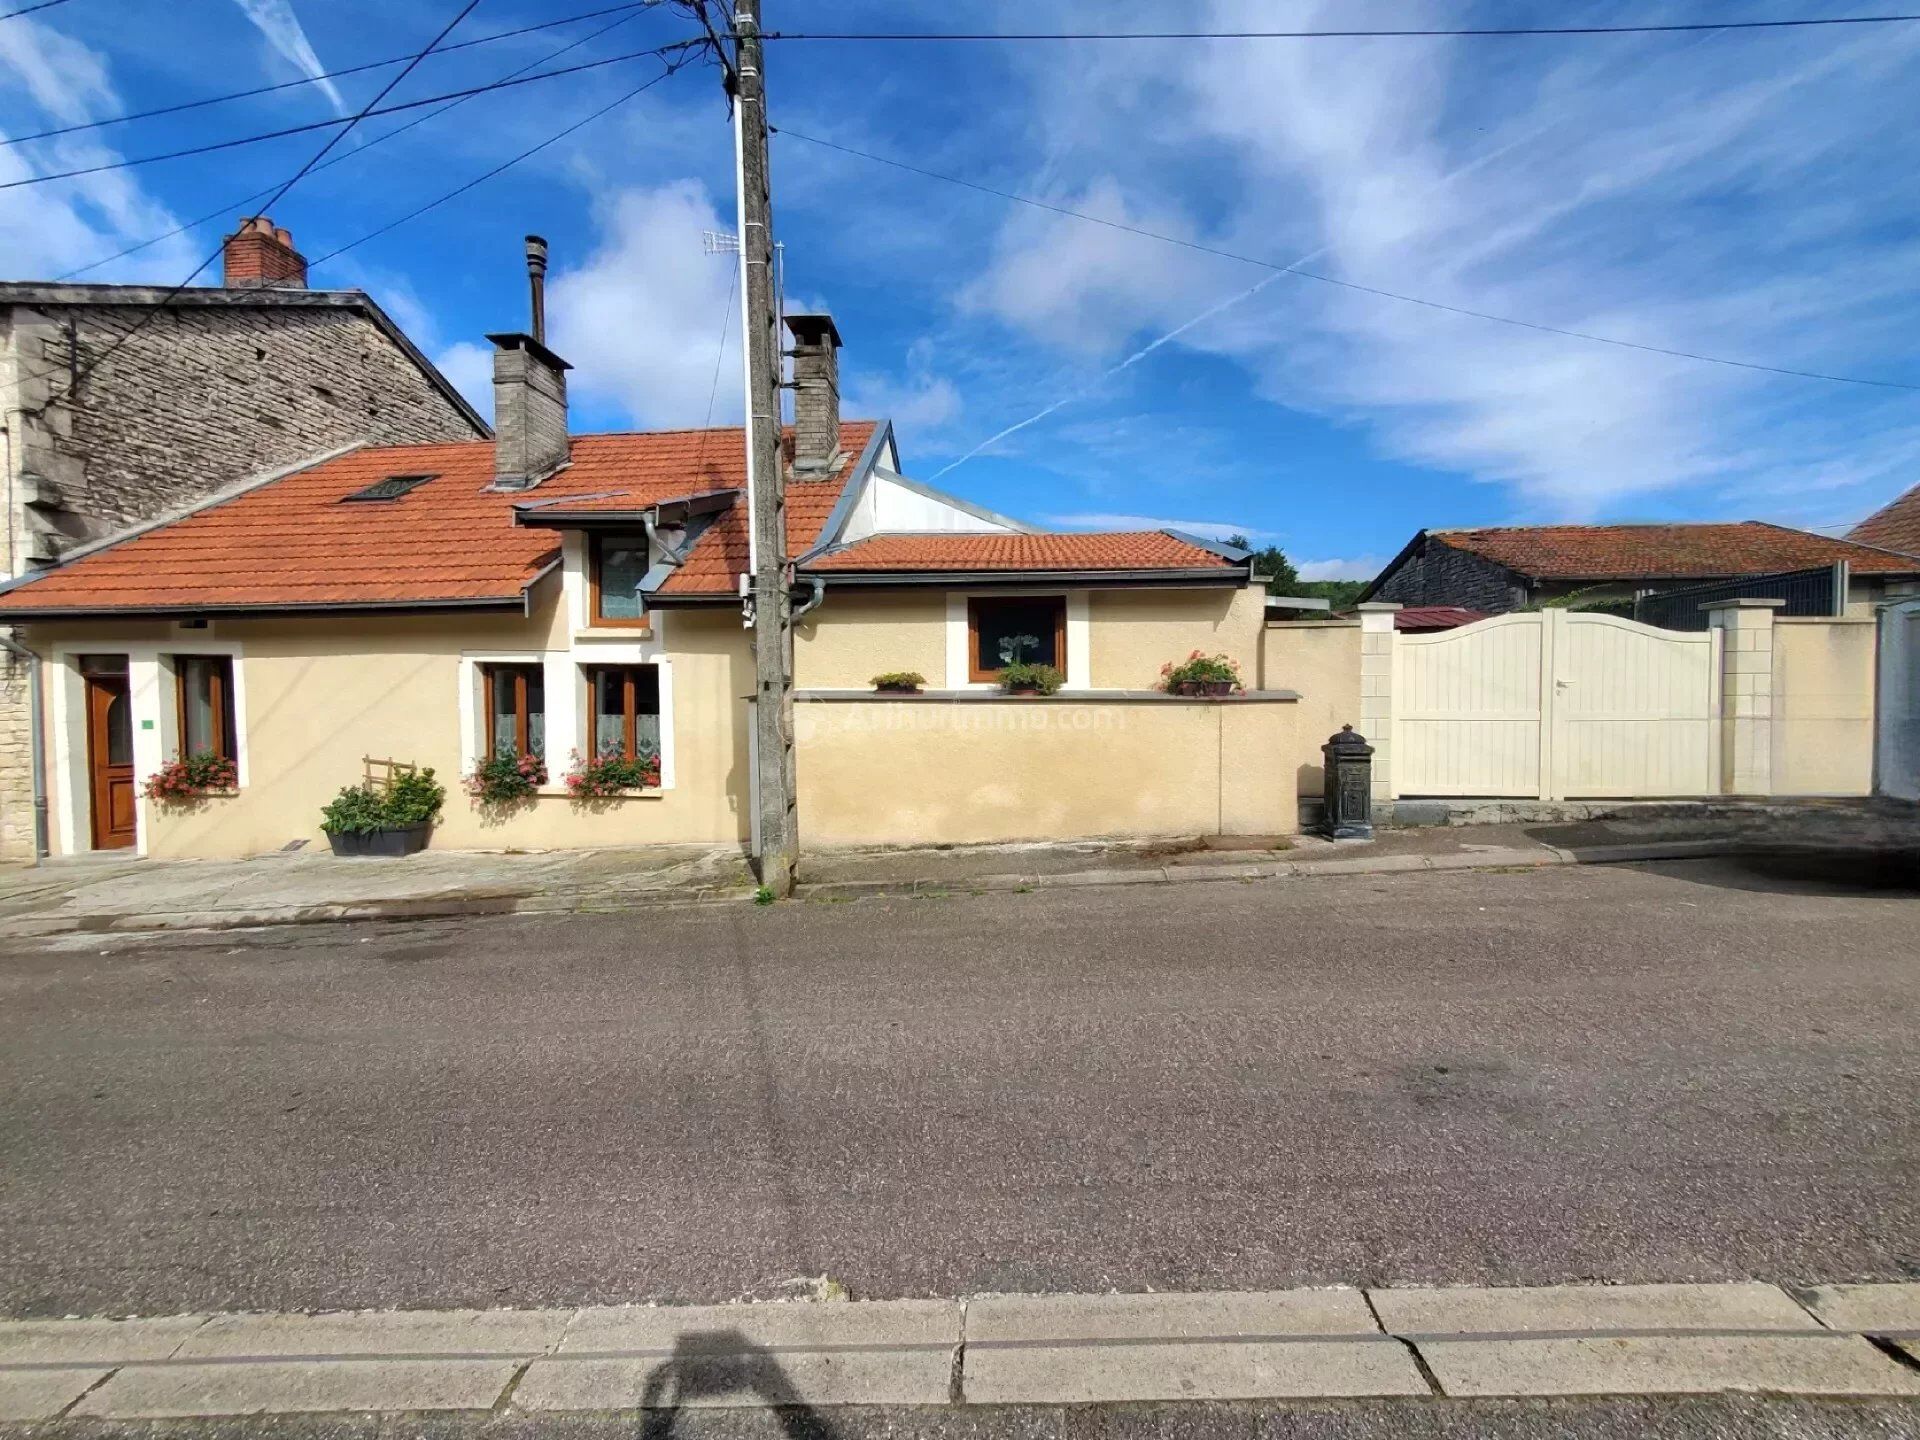 Vente Maison de village 102 m² à Doulaincourt-Saucourt 99 000 €